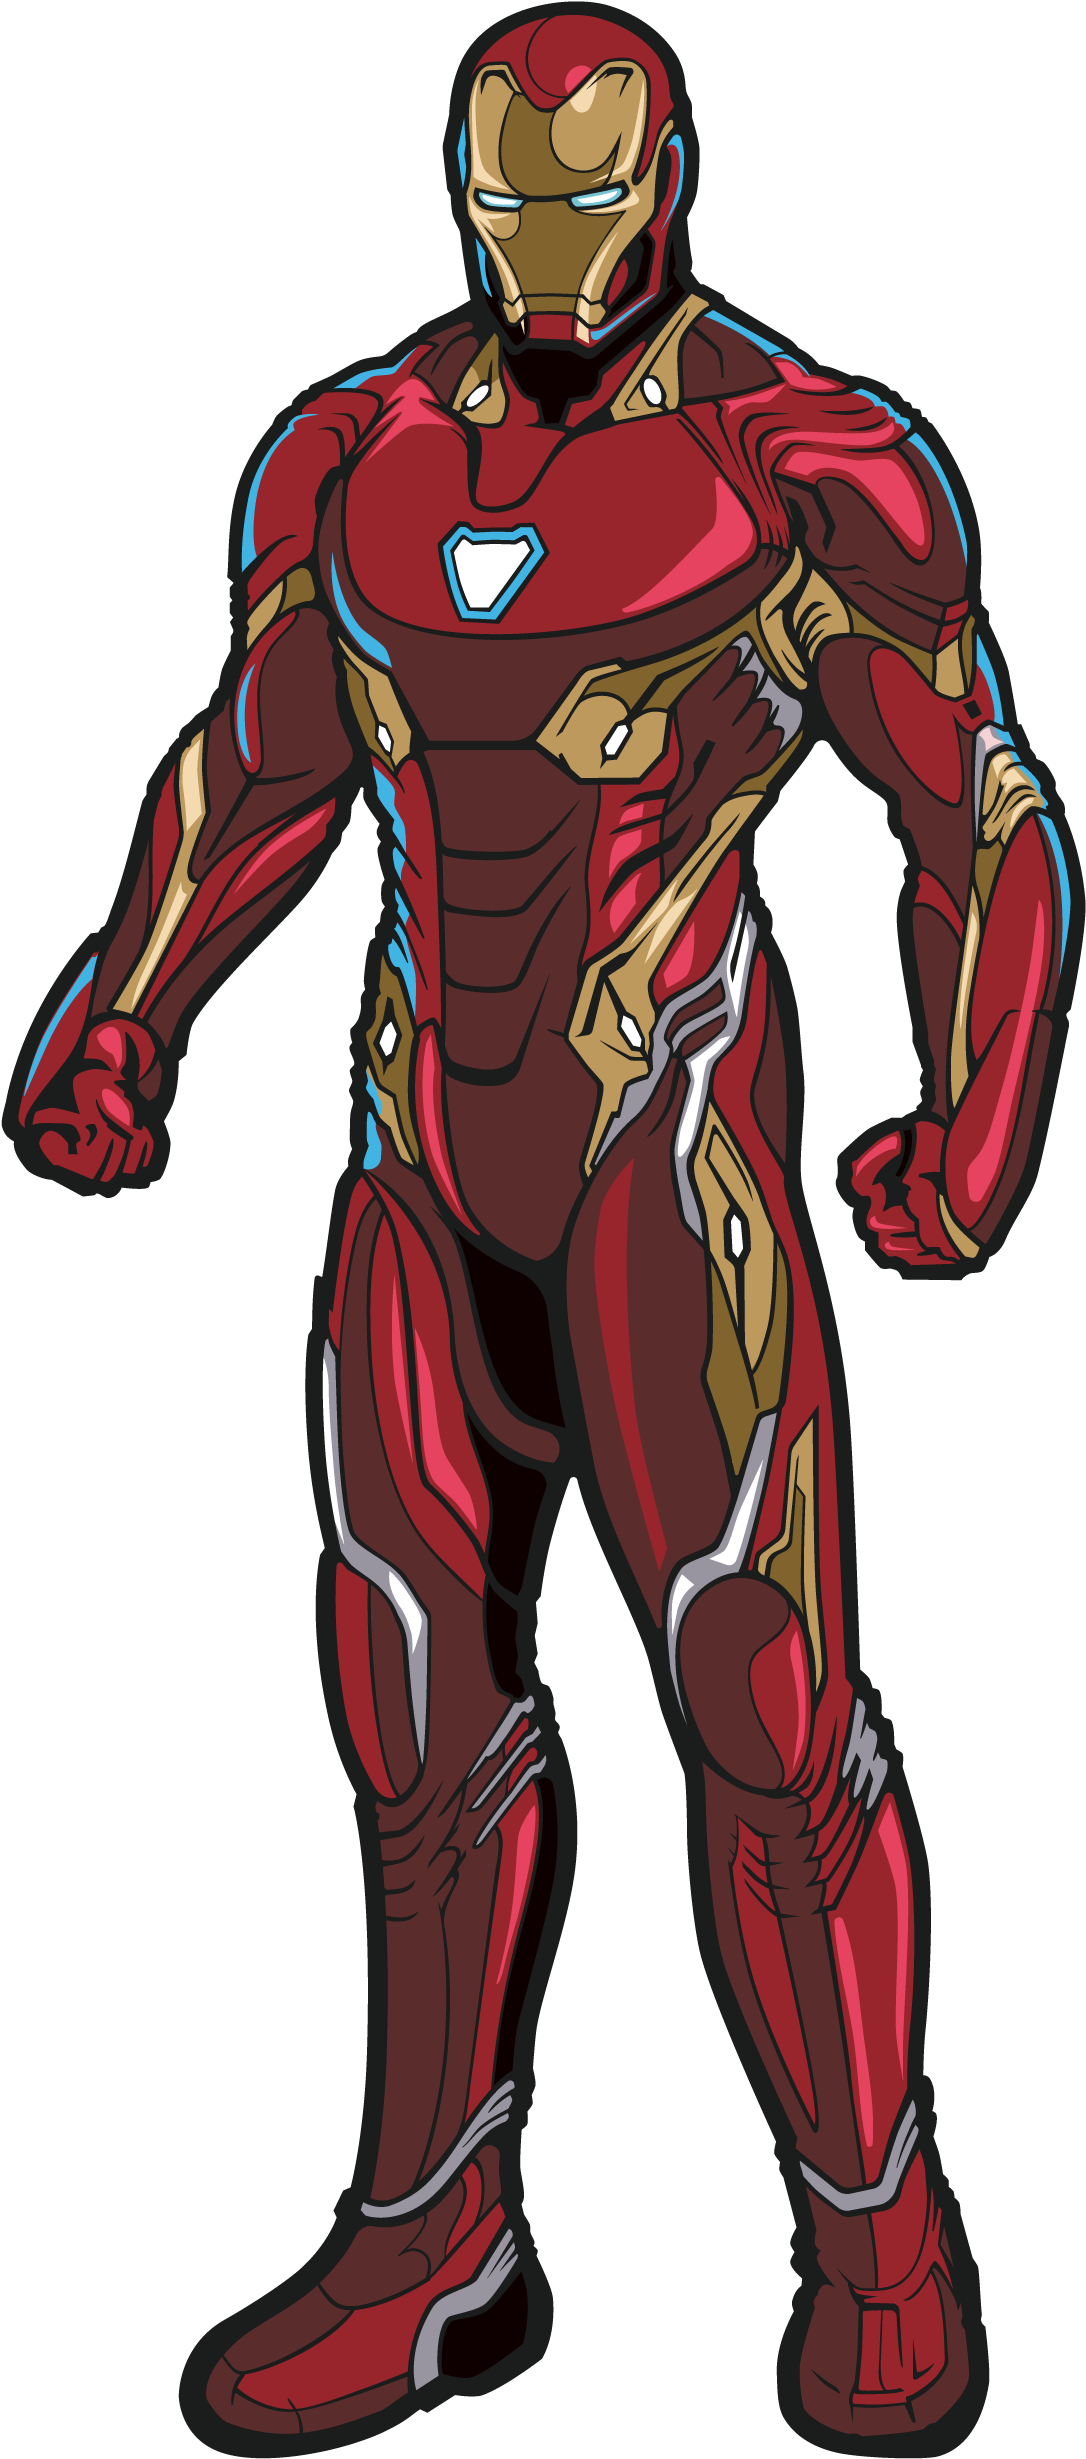 Marvel Infinity War Iron Man PNG Transparent Image